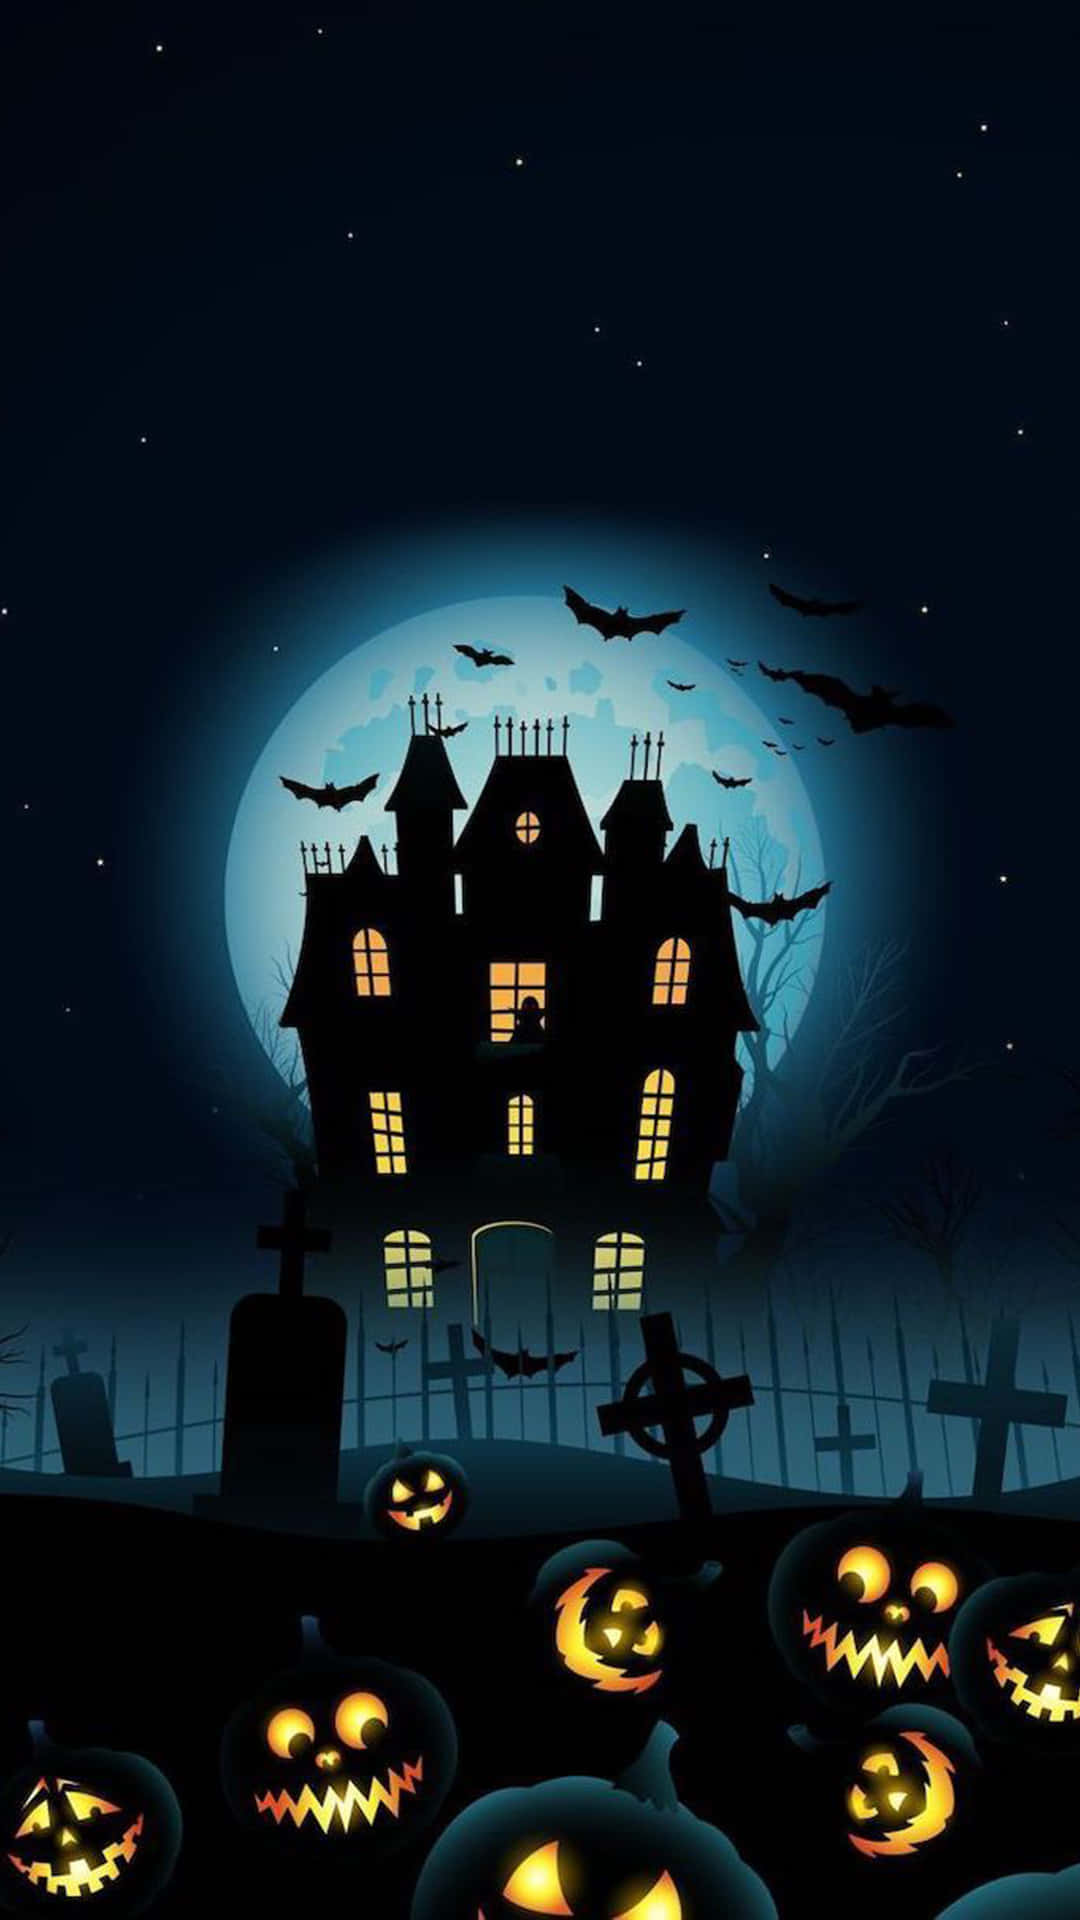 Xem ngôi biệt thự trong đêm Halloween để trải nghiệm không khí đầy thú vị và ma quái. Với đèn điện và phụ kiện đặc biệt, ngôi nhà được biến thành điểm đến không thể bỏ qua trong dịp lễ này. 